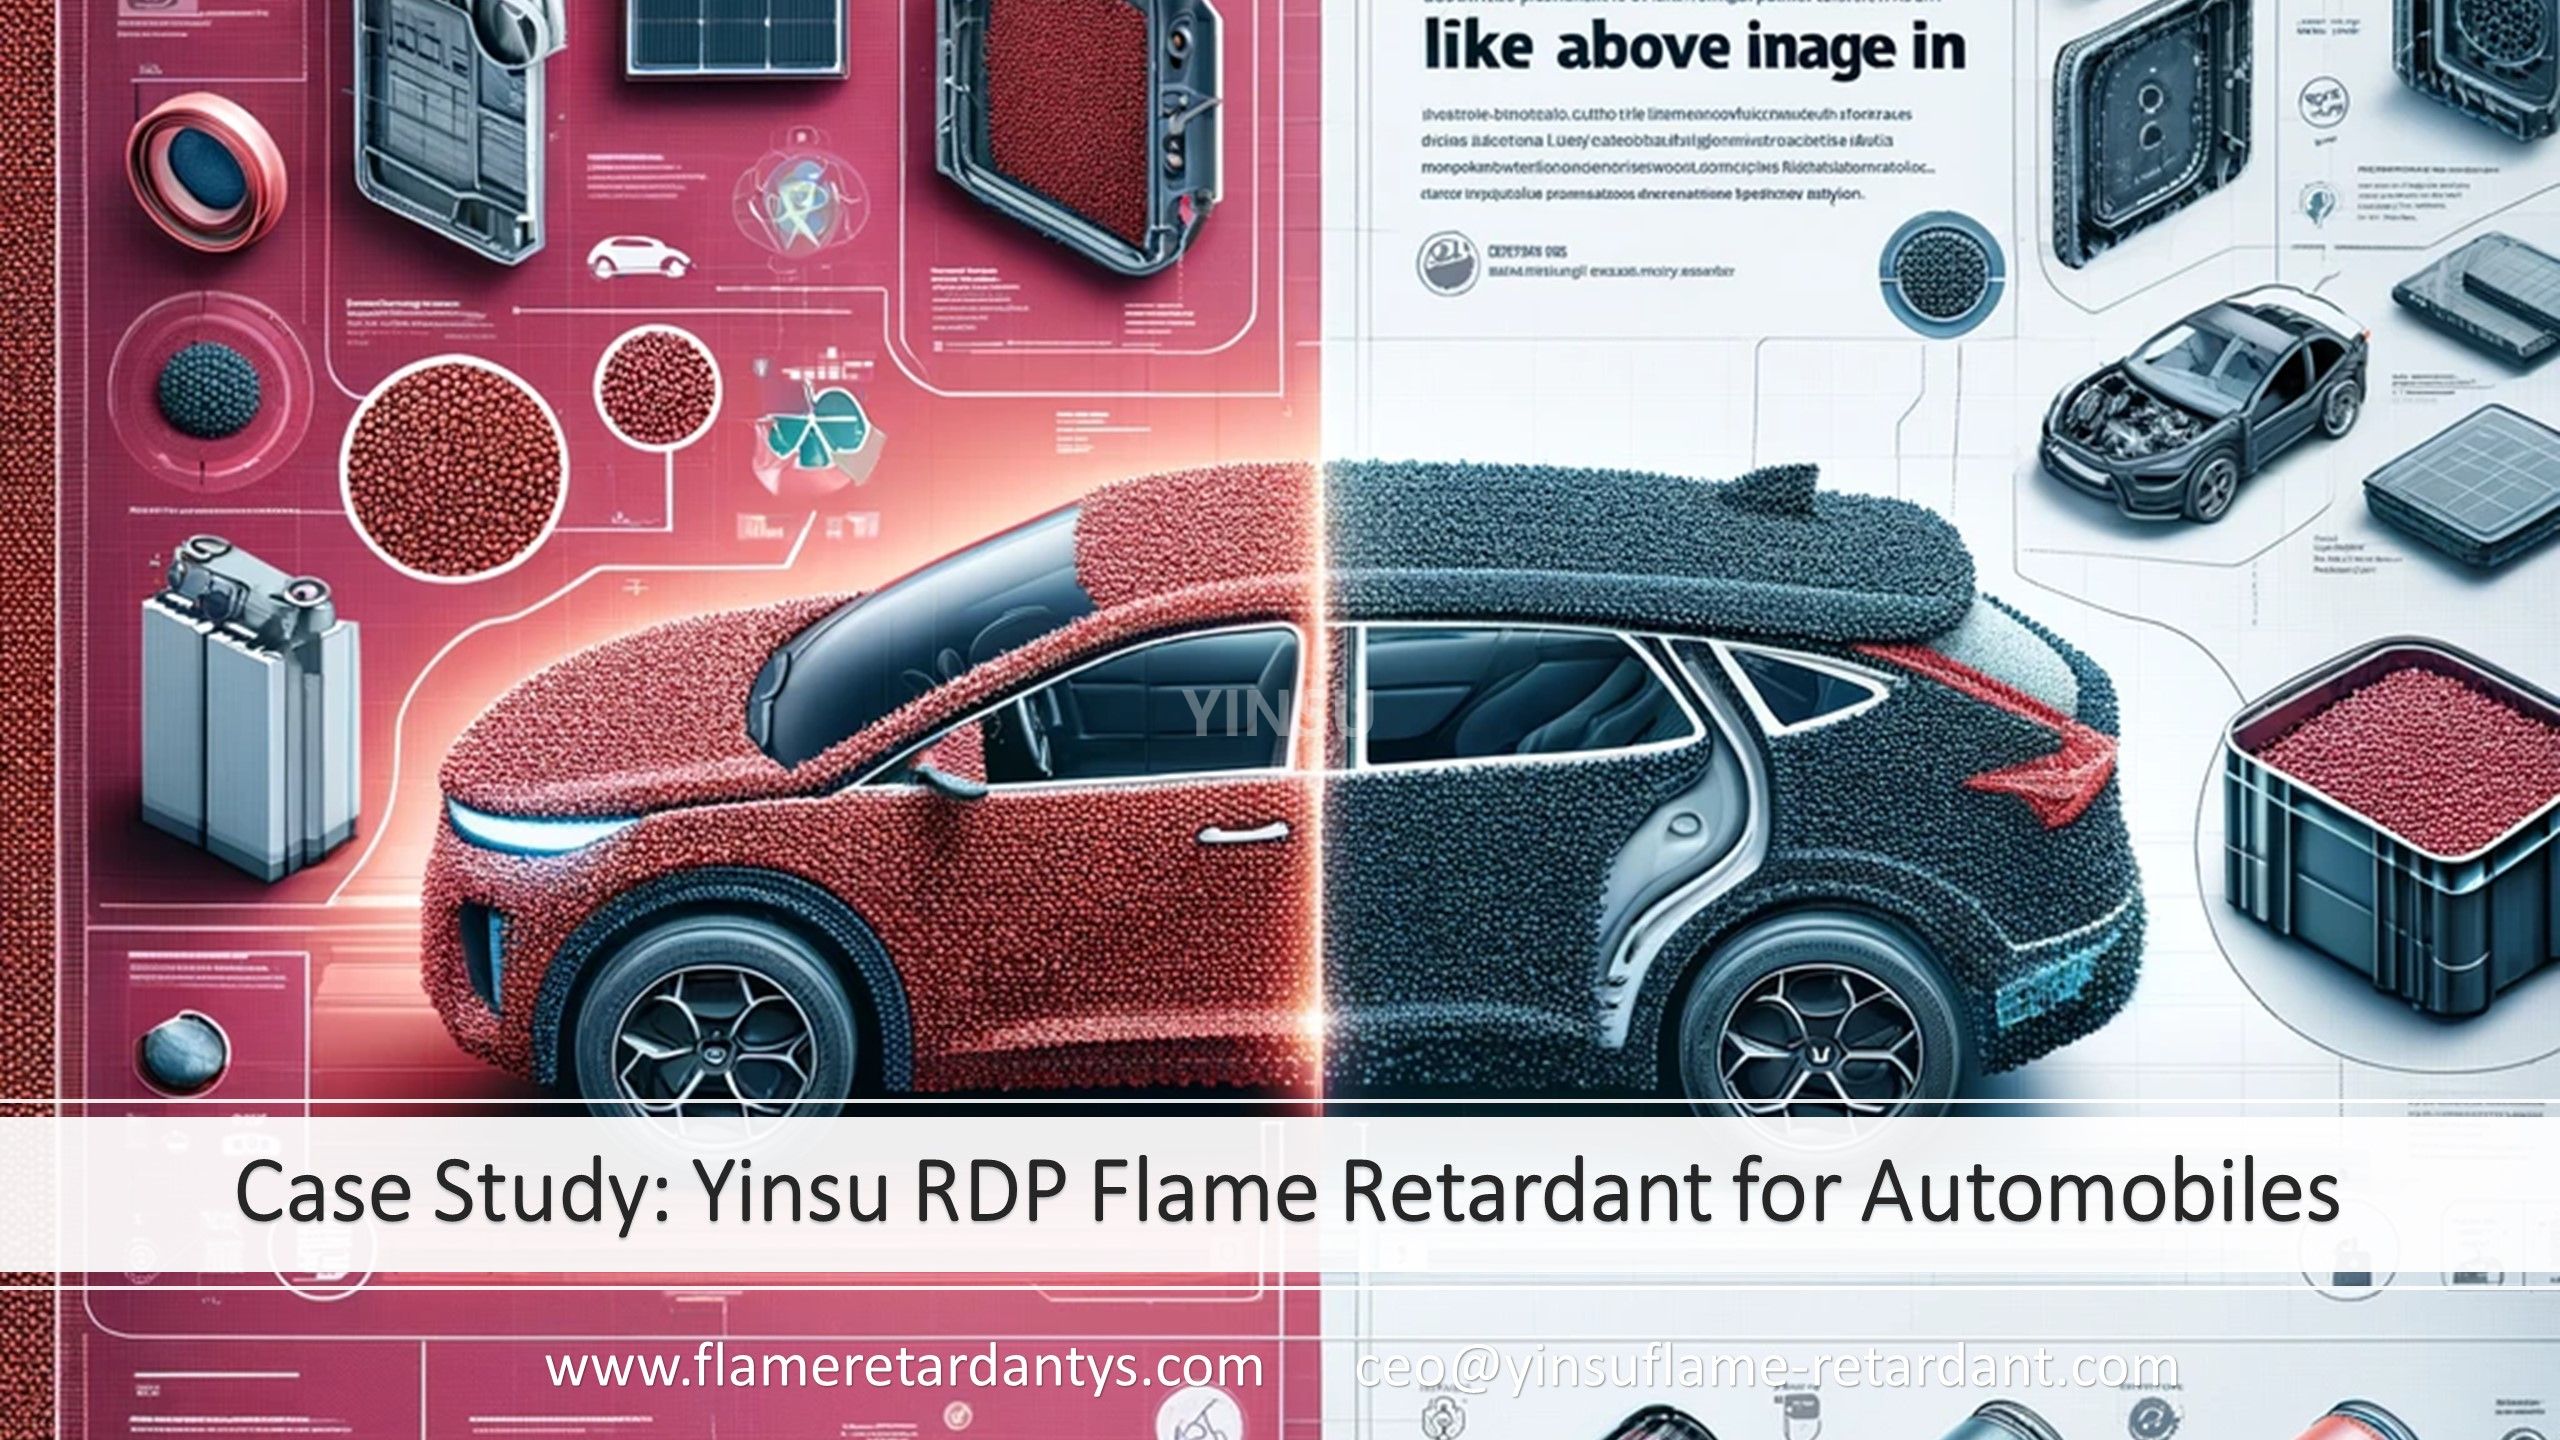 Estudio de caso: Retardante de llama Yinsu RDP para automóviles